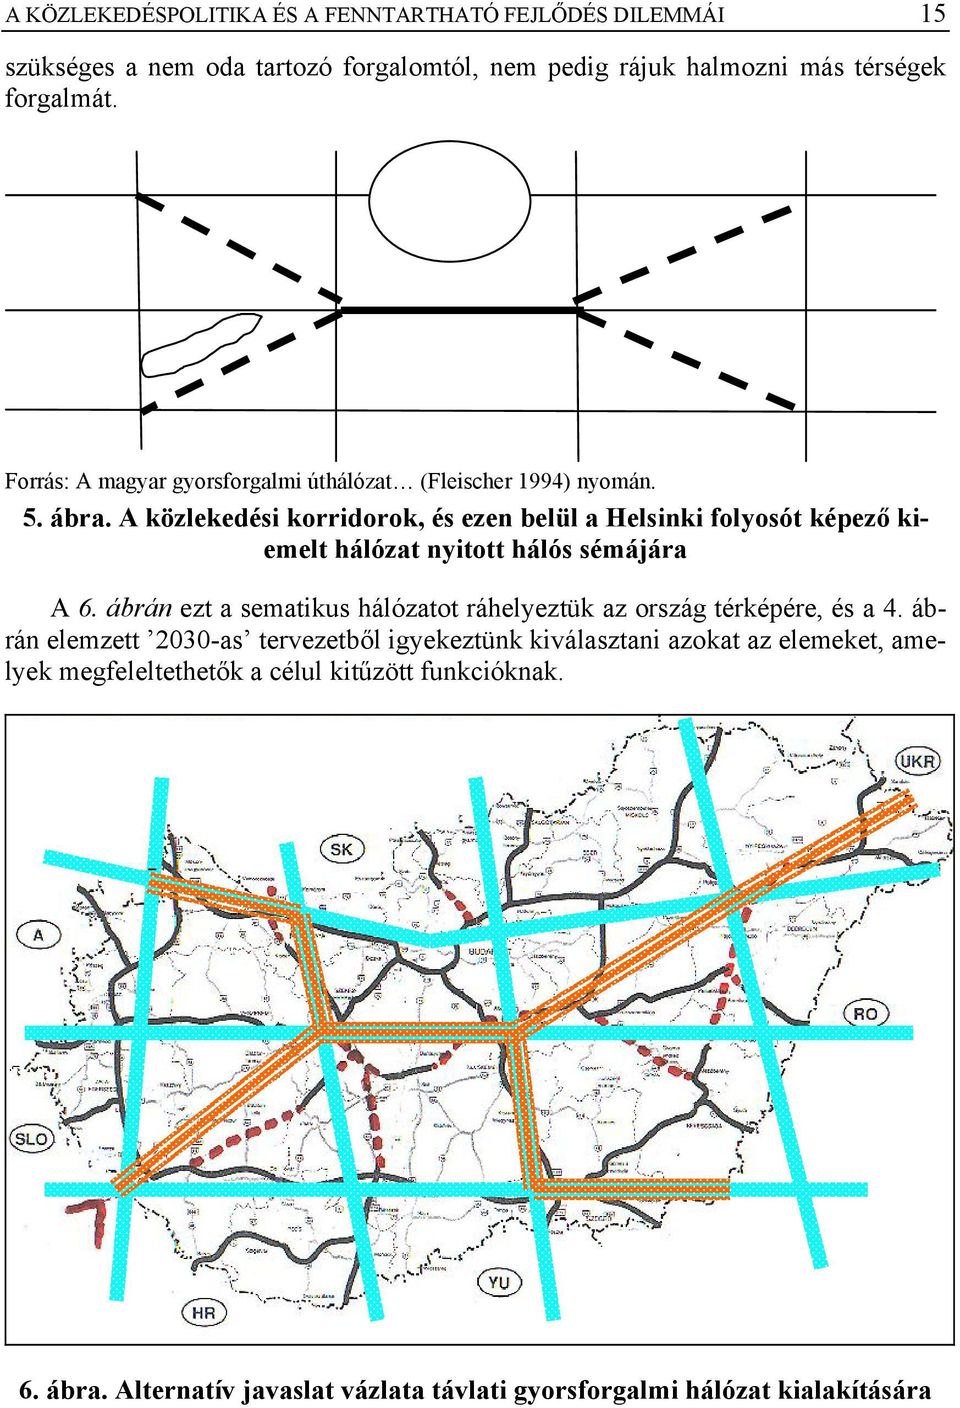 A közlekedési korridorok, és ezen belül a Helsinki folyosót képező kiemelt hálózat nyitott hálós sémájára A 6.